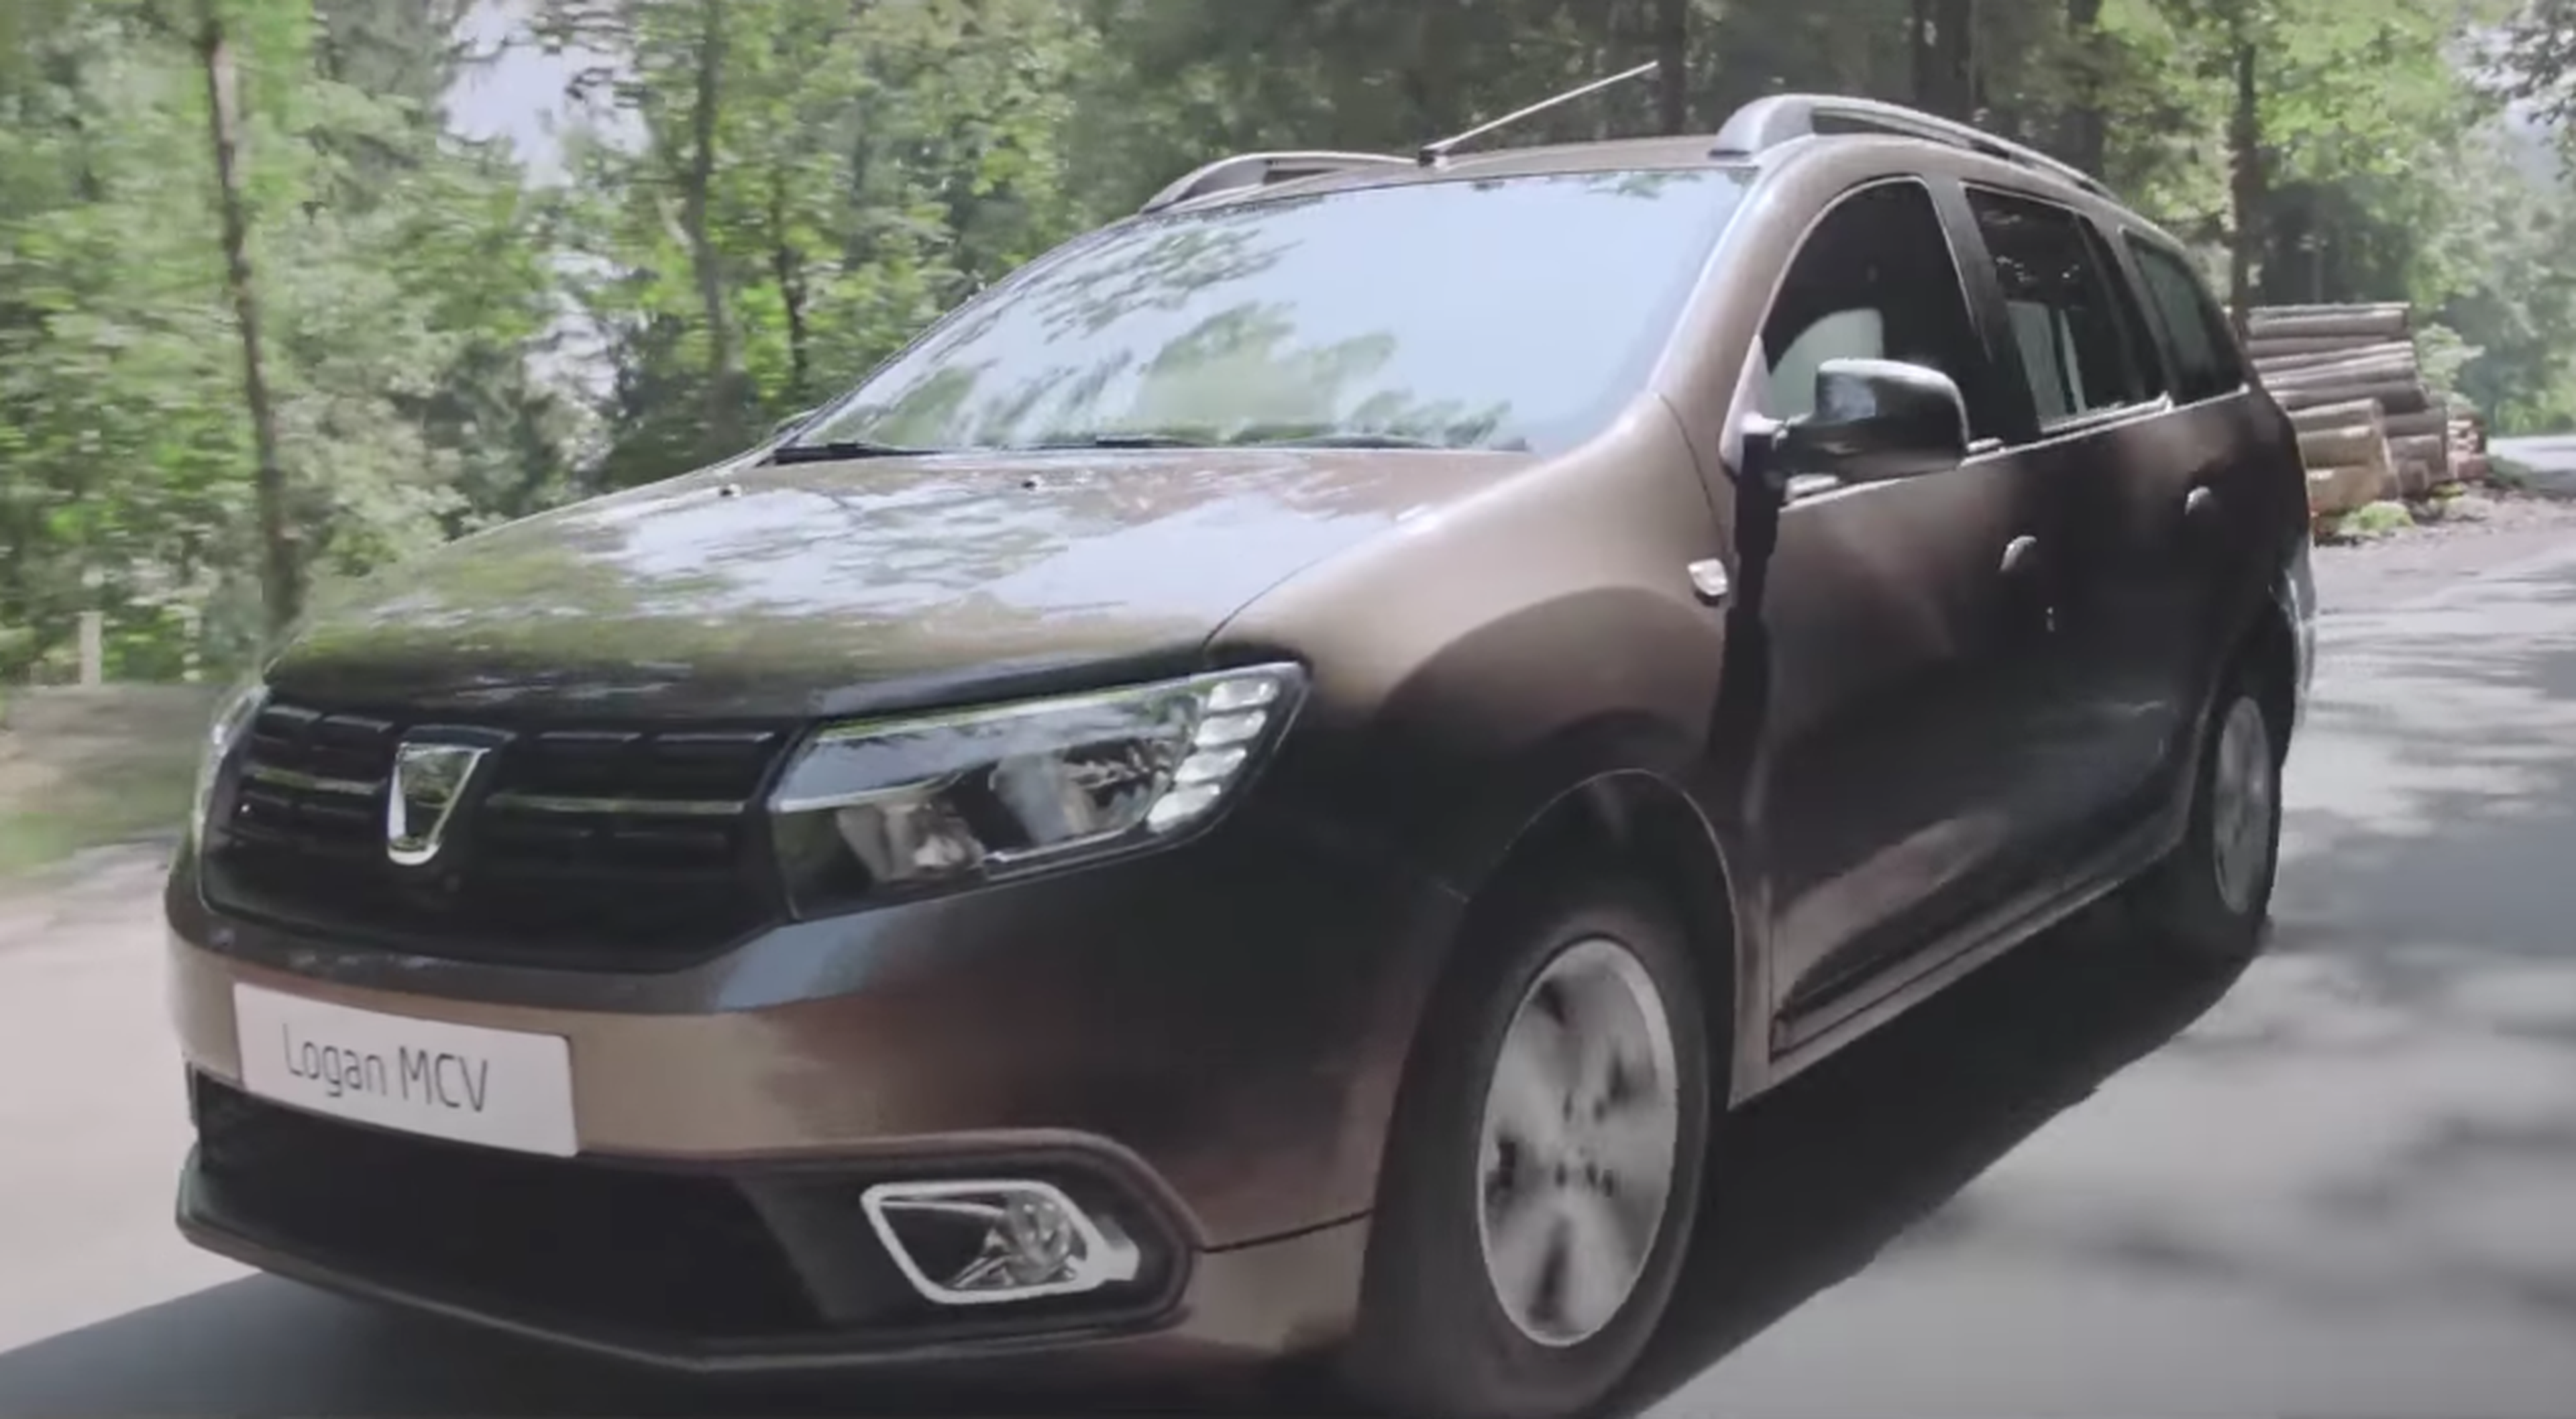 VÍDEO: ¡Toma precio del Dacia Logan MCV! Mira lo que ofrece